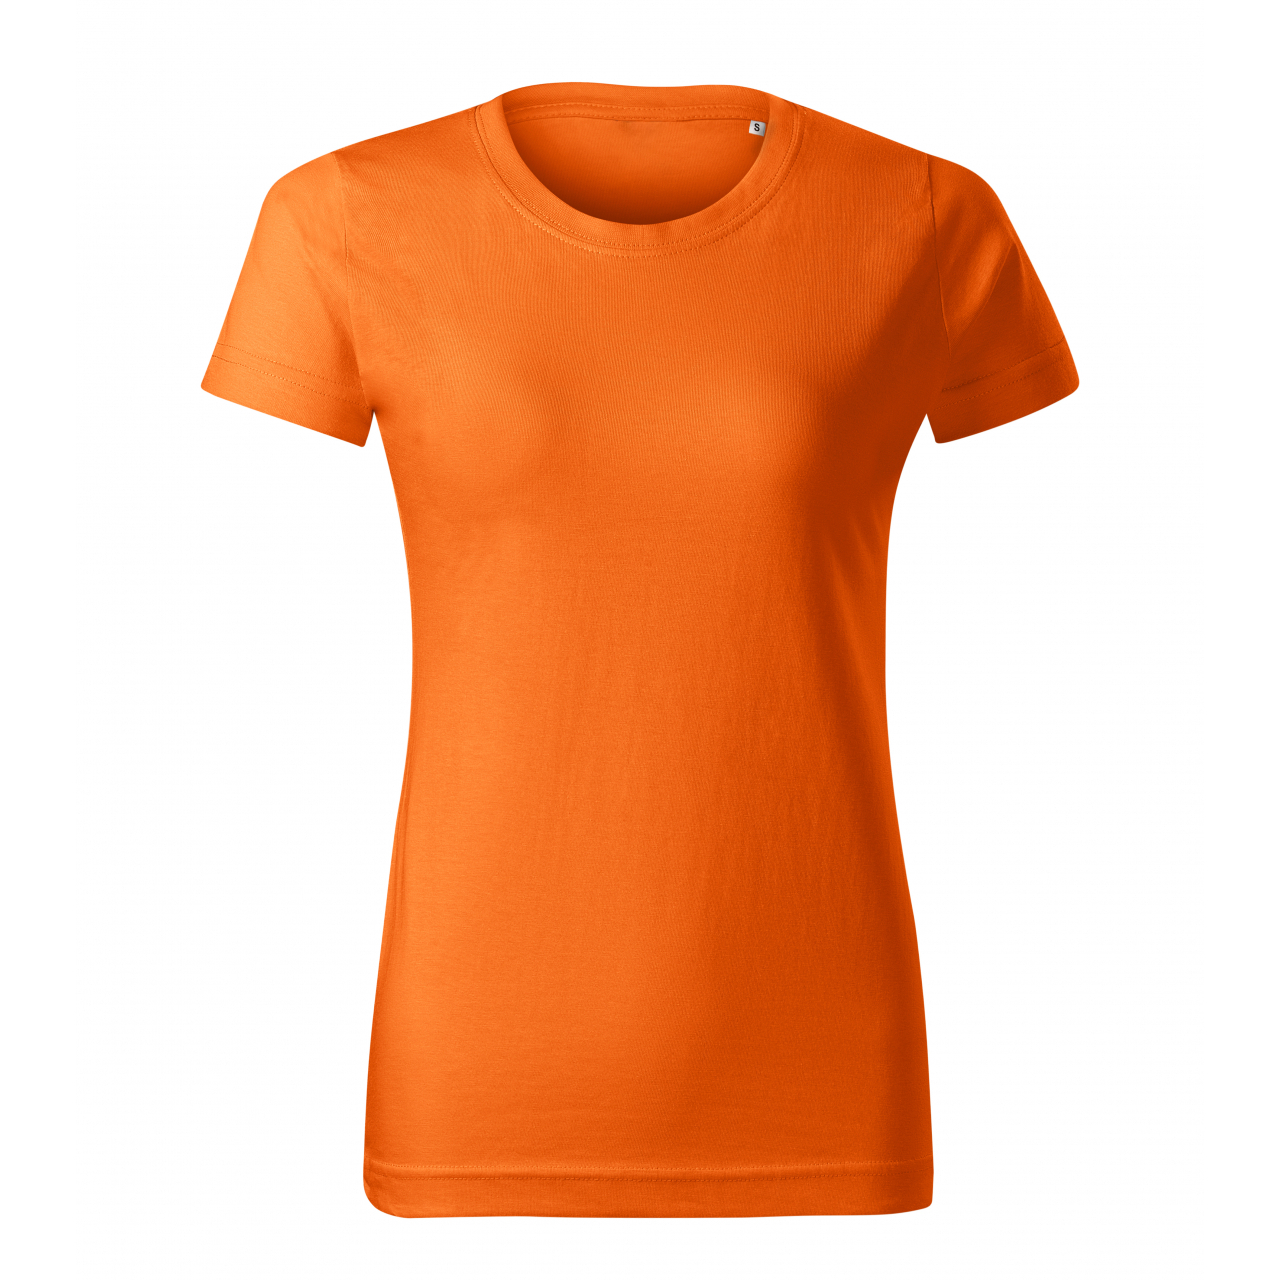 Tričko dámské Malfini Basic Free - oranžové, XS